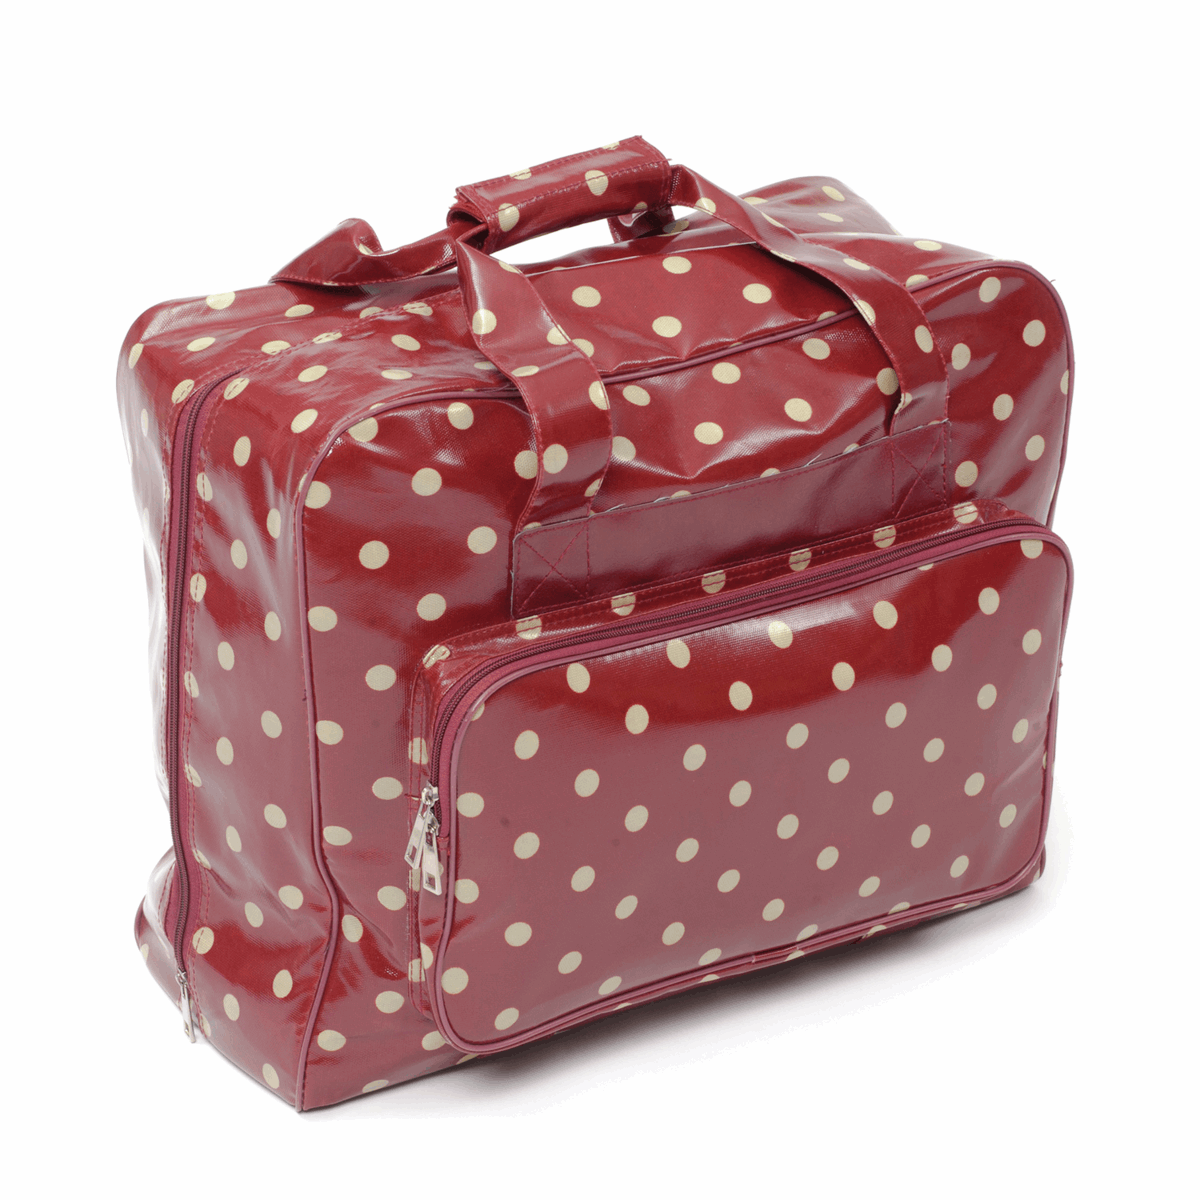 Sewing Machine Bag Glossy PVC - Red Polka / Hobby Gift